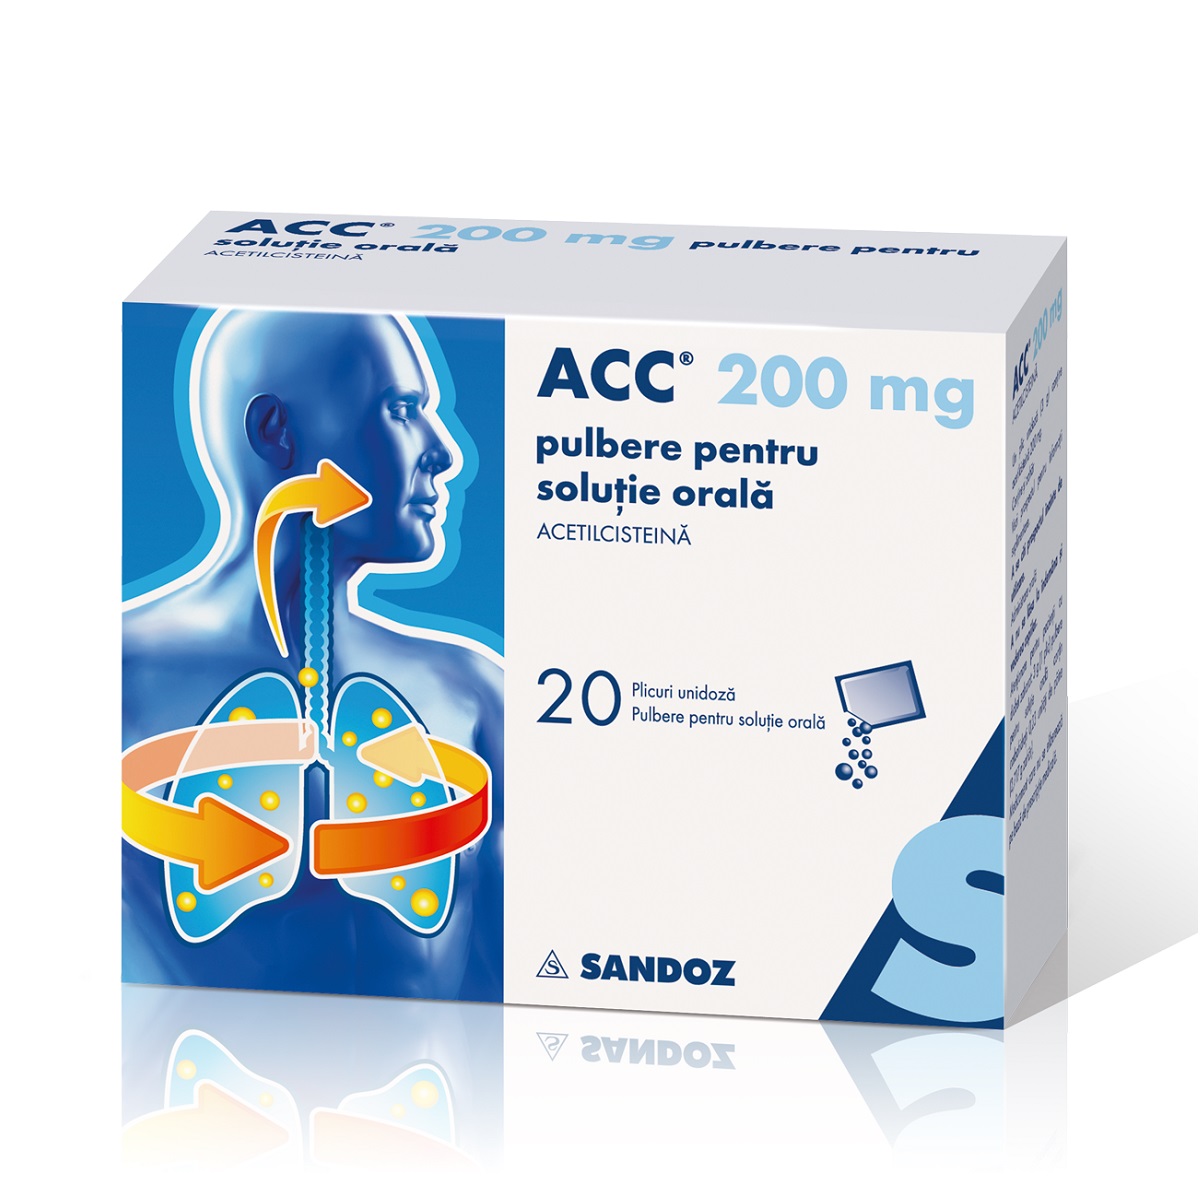 Expectorante - Acc 200mg pulbere pentru soluție orală, 20 plicuri, Sandoz, sinapis.ro